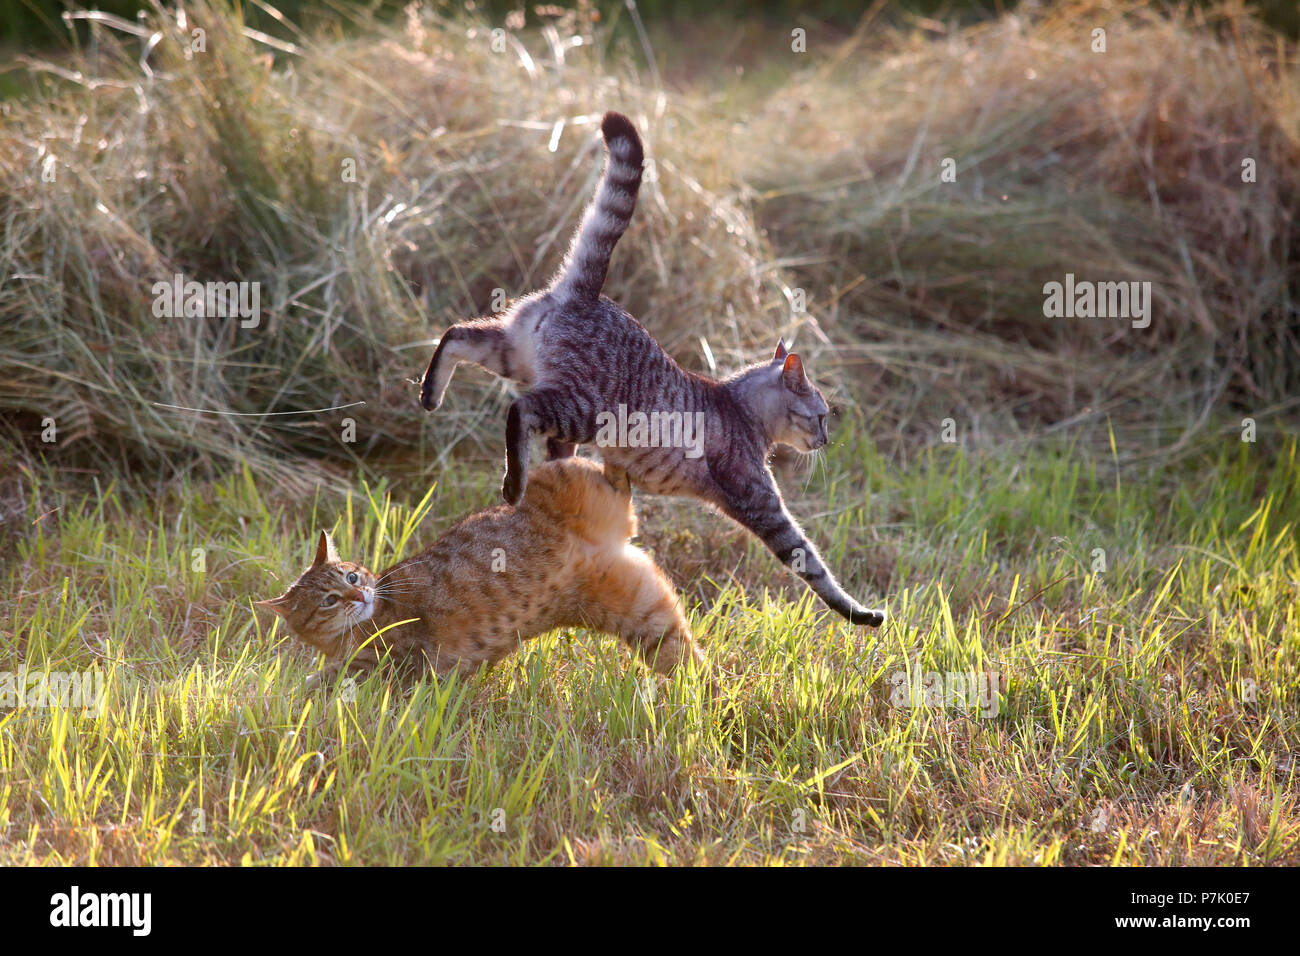 Domestic cats playing amongst cut grass. Stock Photo